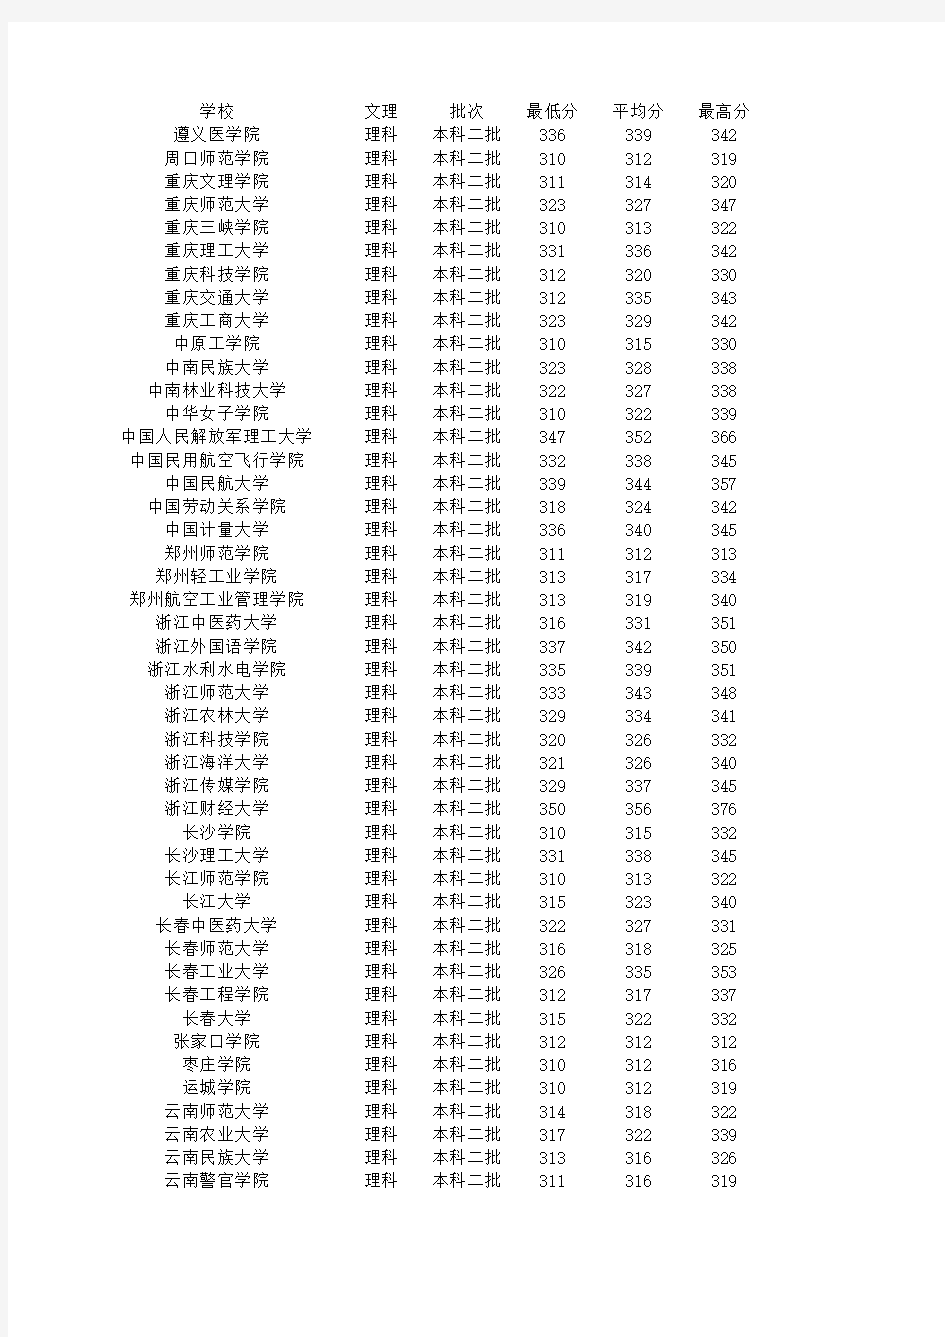 2015年江苏省高考分数统计各院校录取分最高分最低分平均分